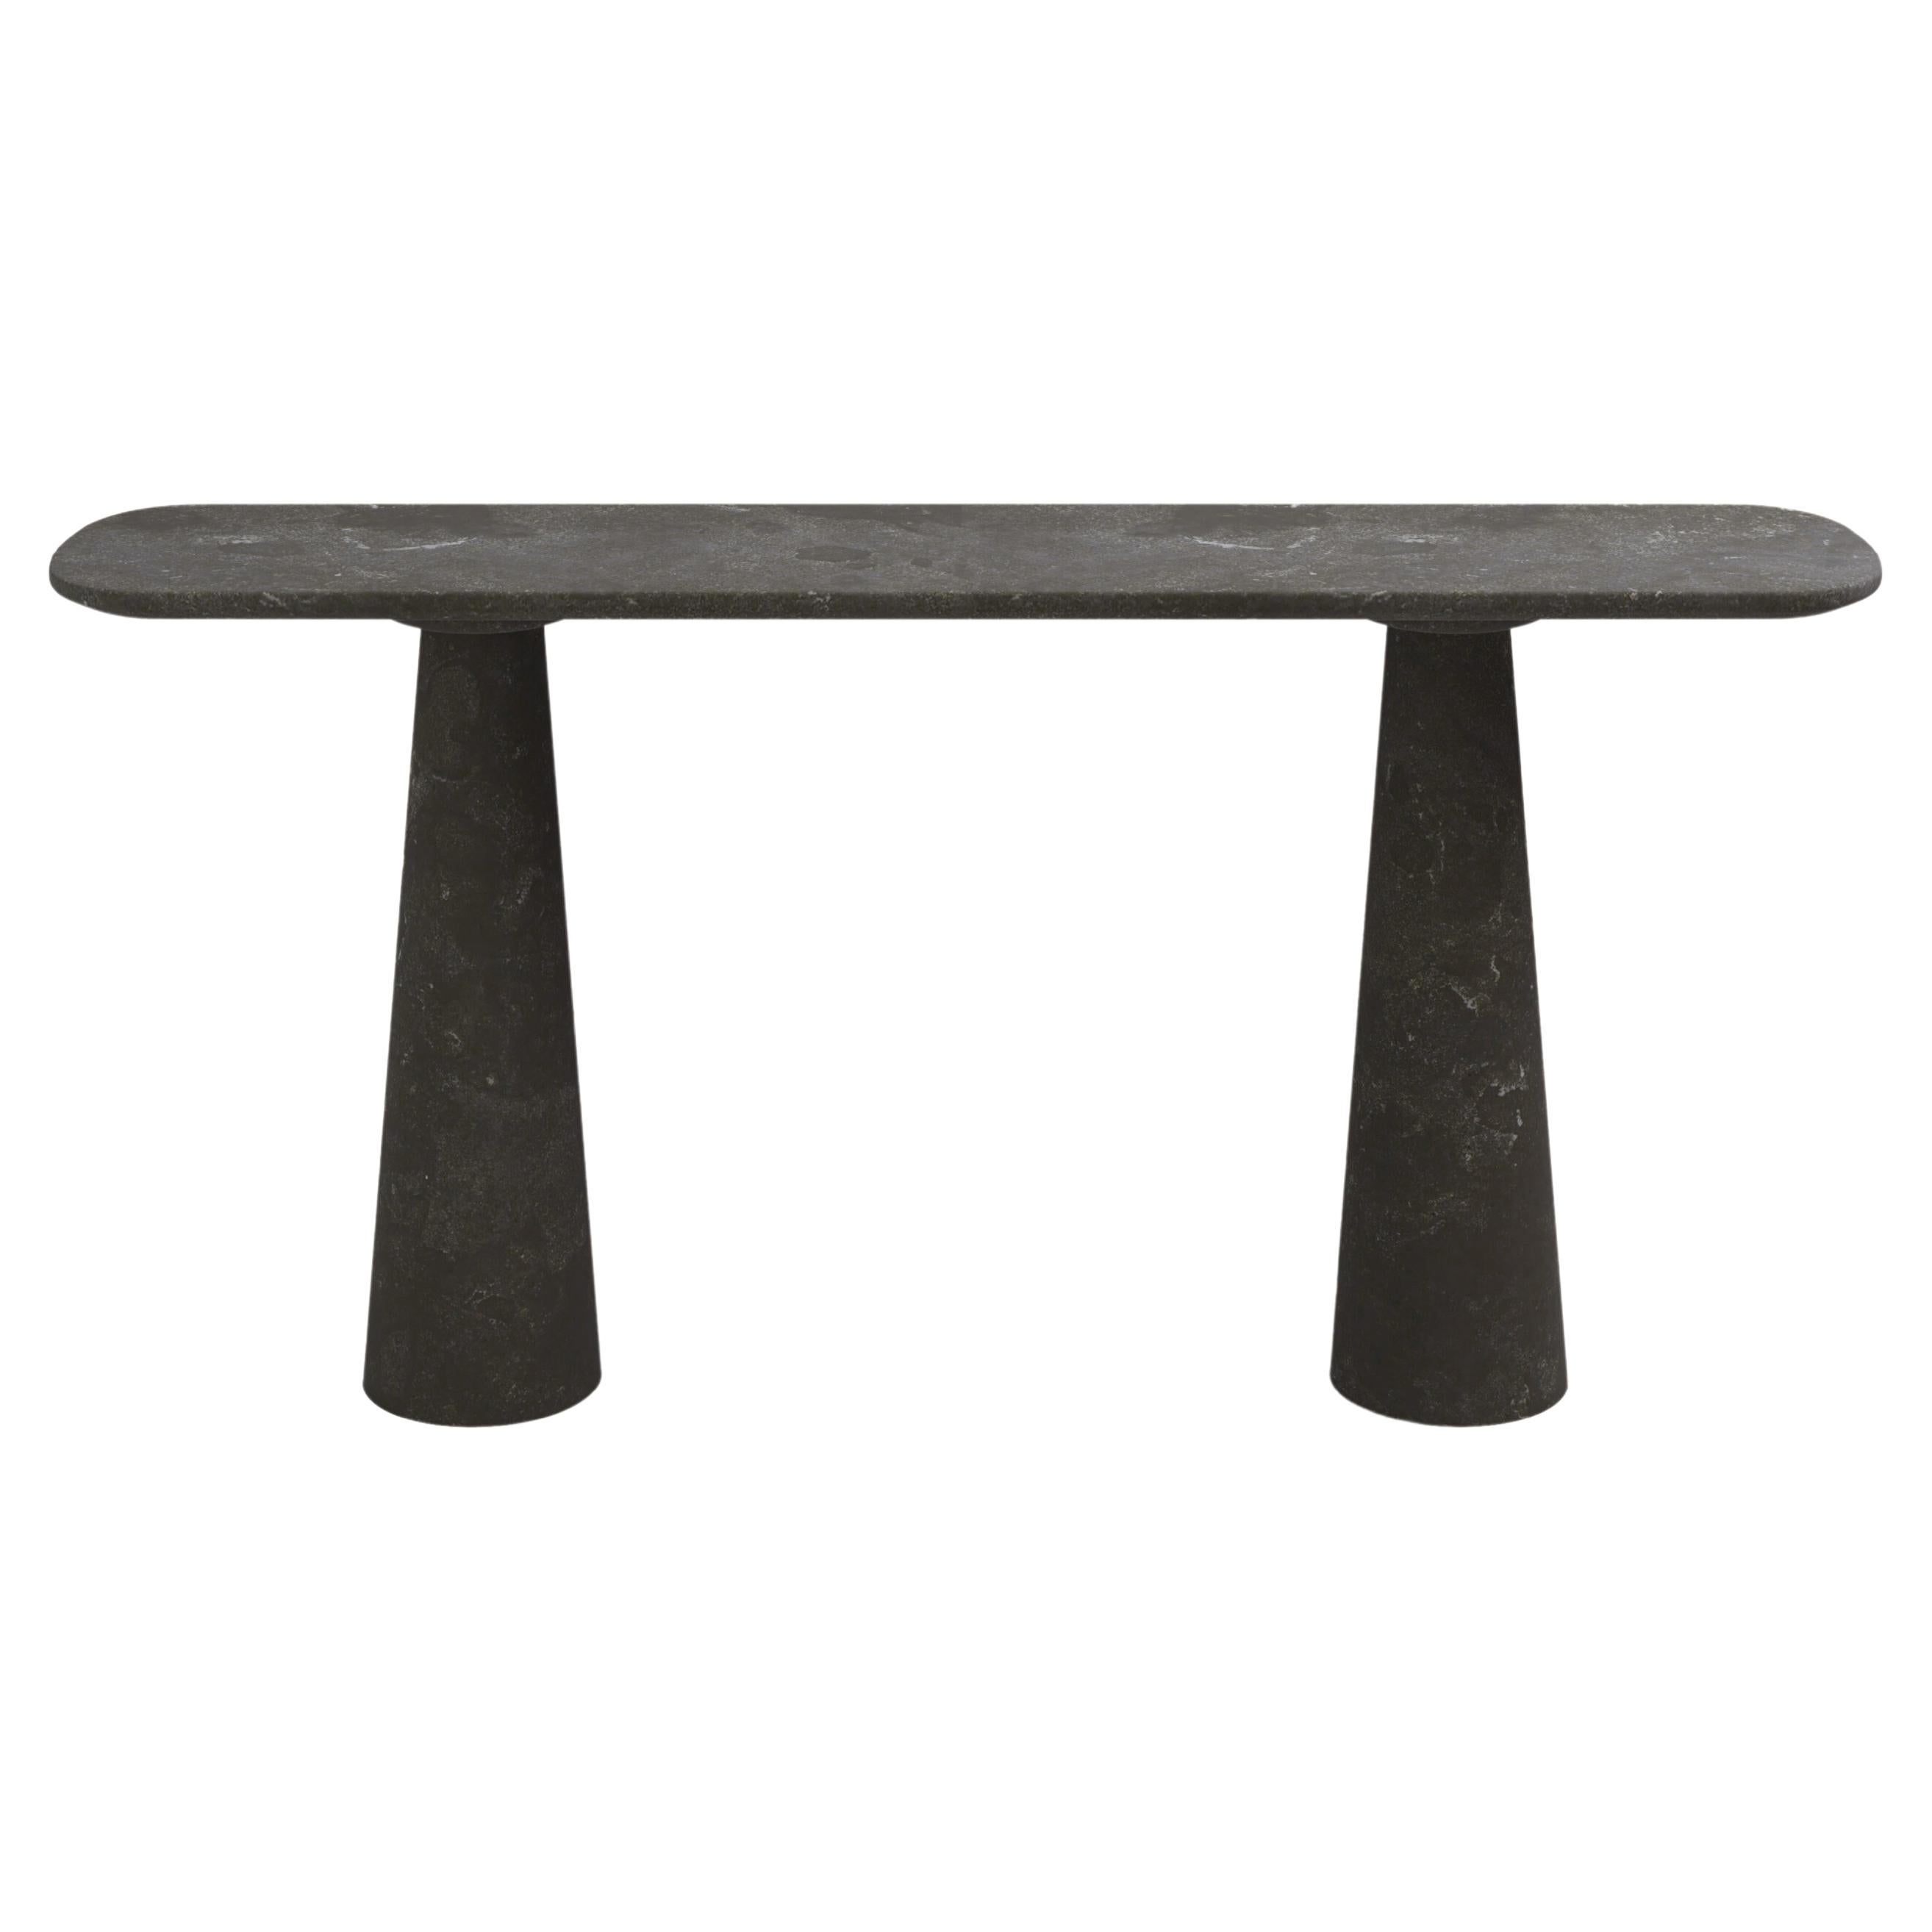 FORM(LA) Table console Cono 84L x 15W x 33H Nero Petite Granite